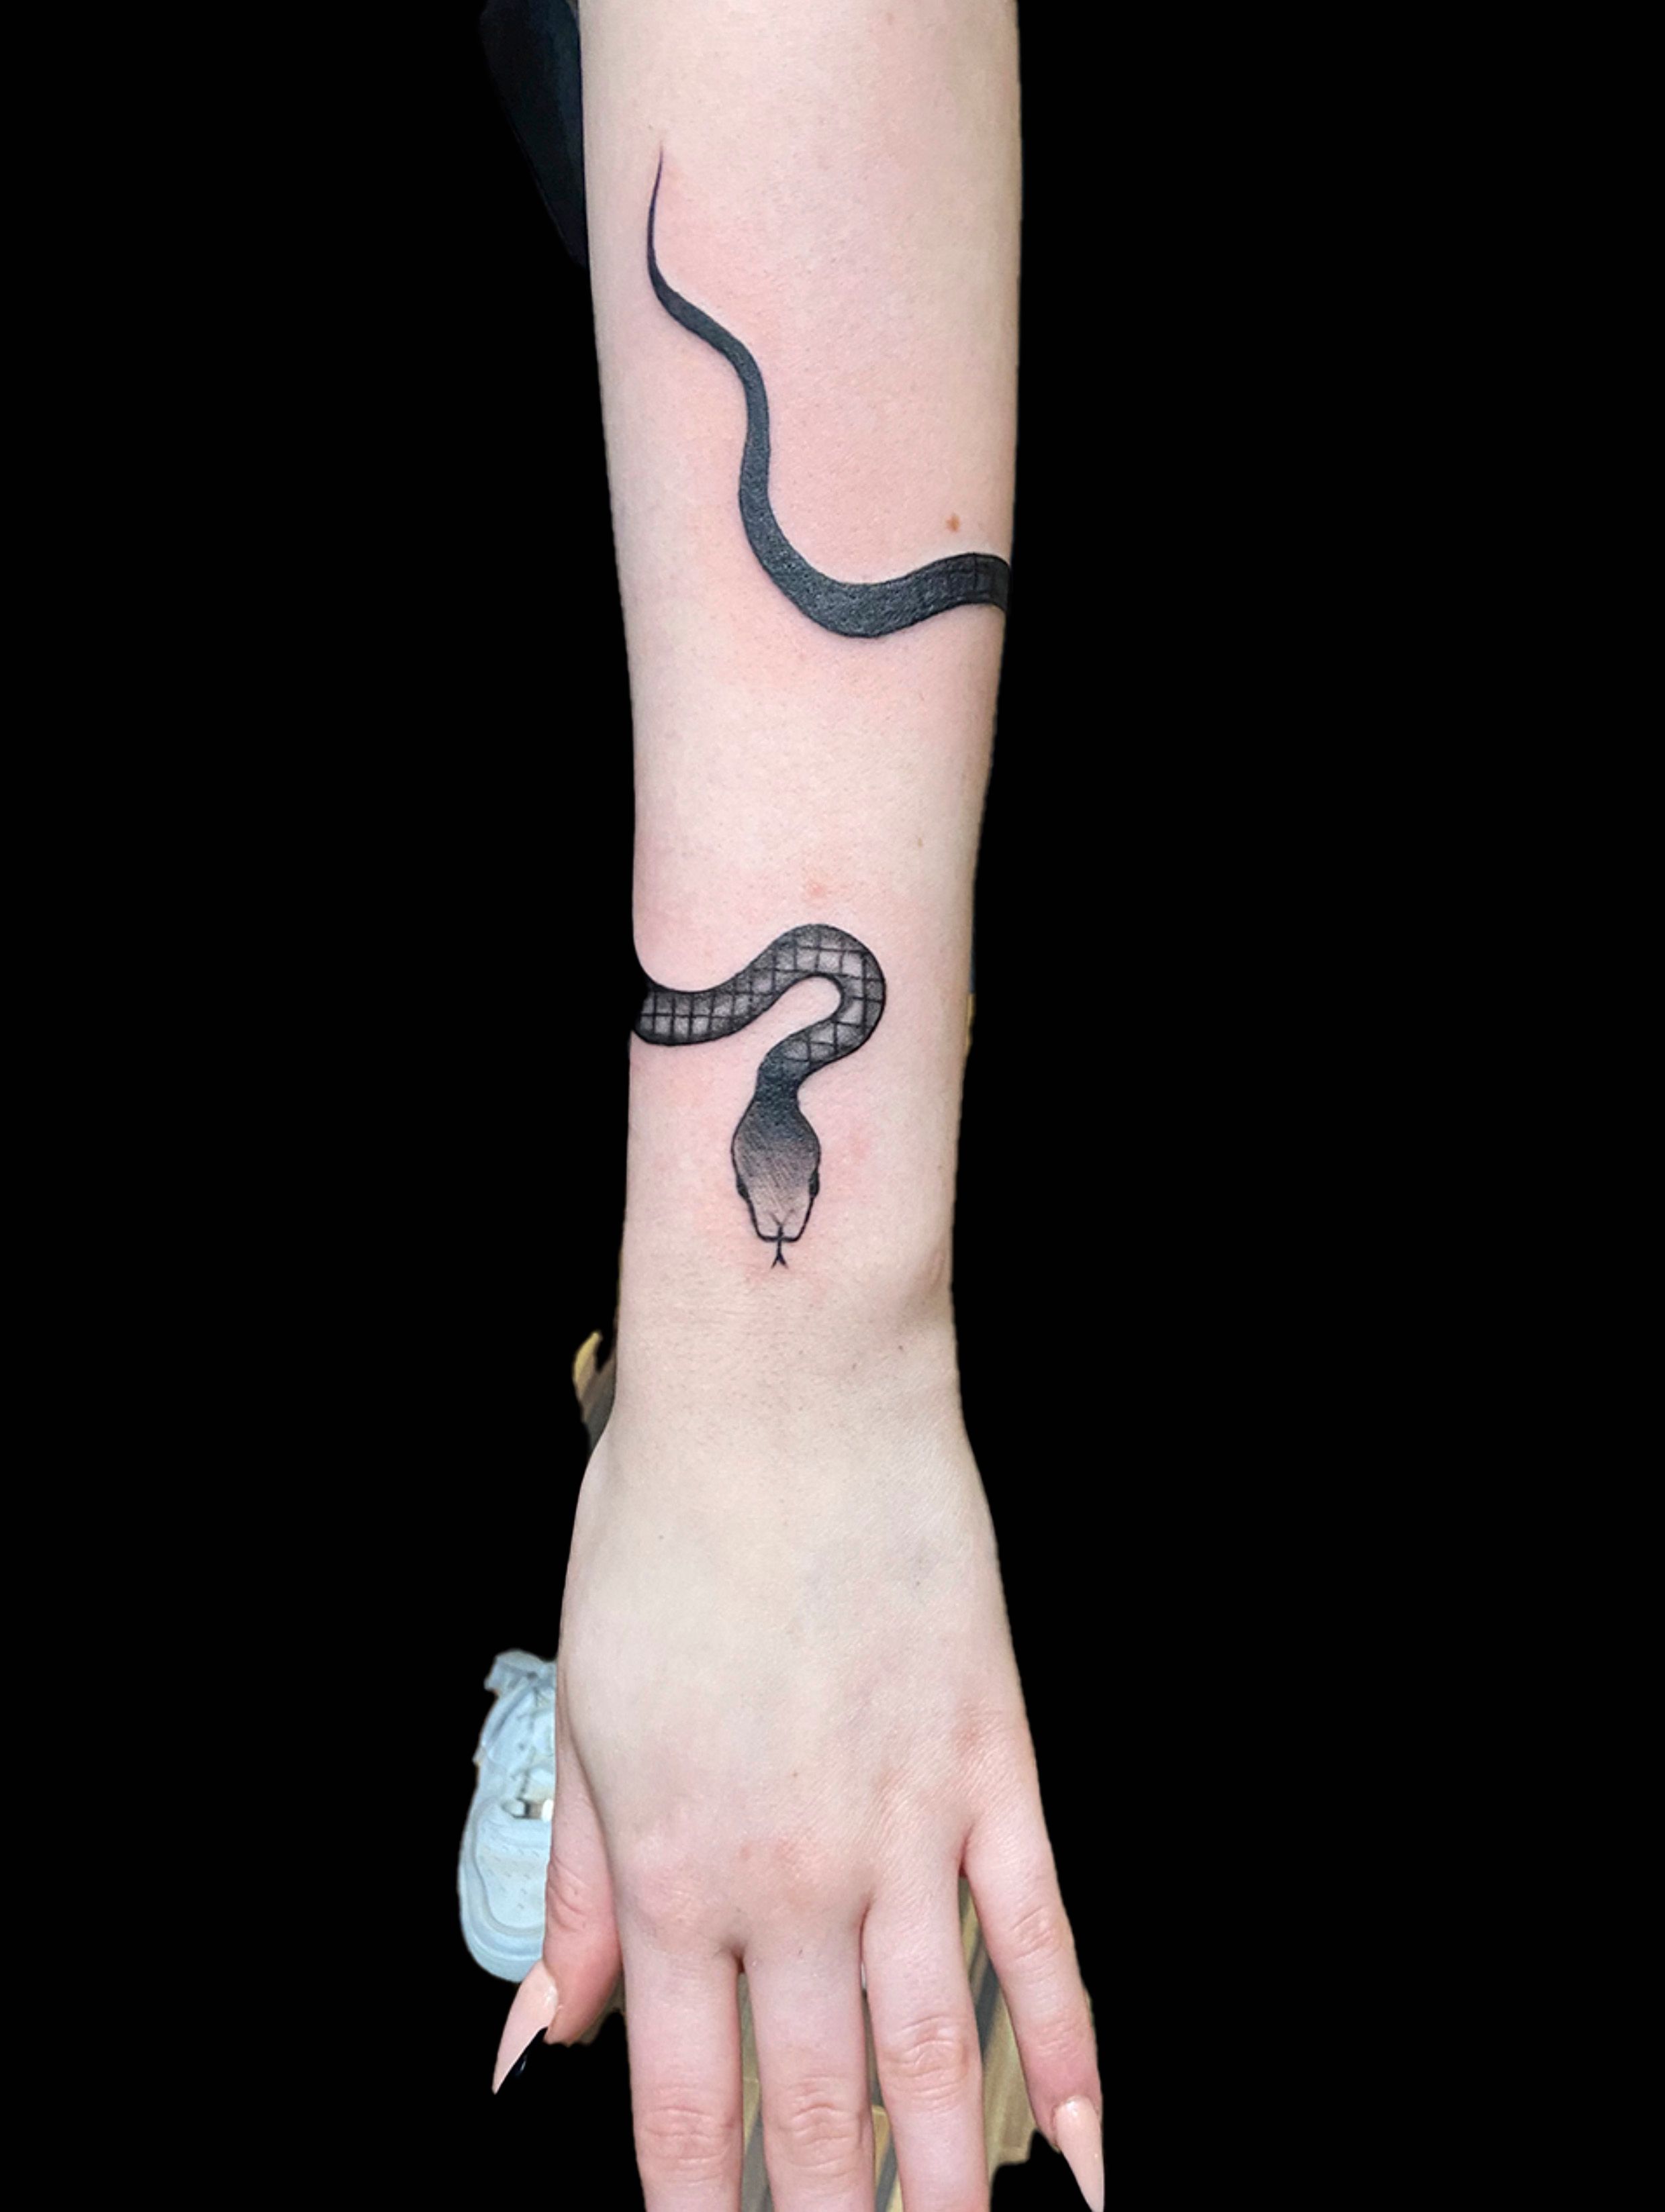 Black Ink Snake Tattoo Design For Wrist